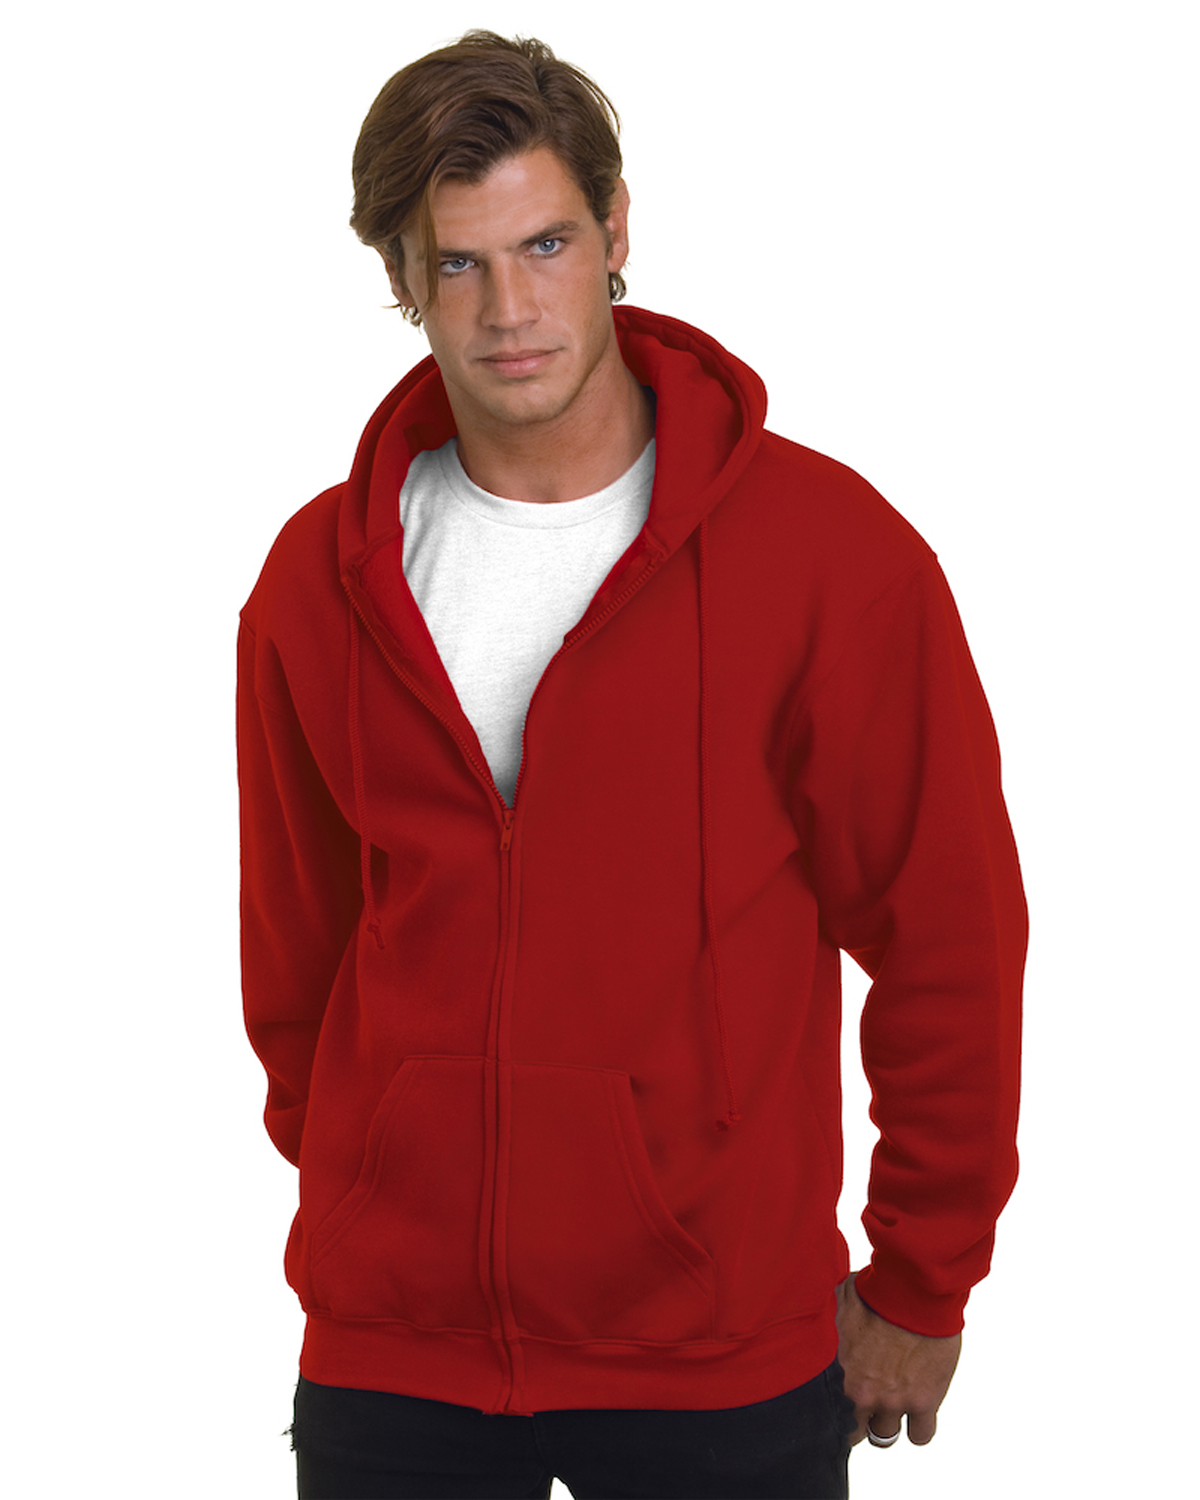 BA900 Bayside Adult 9.5oz., 80% cotton/20% polyester Full-Zip Hooded Sweatshirt